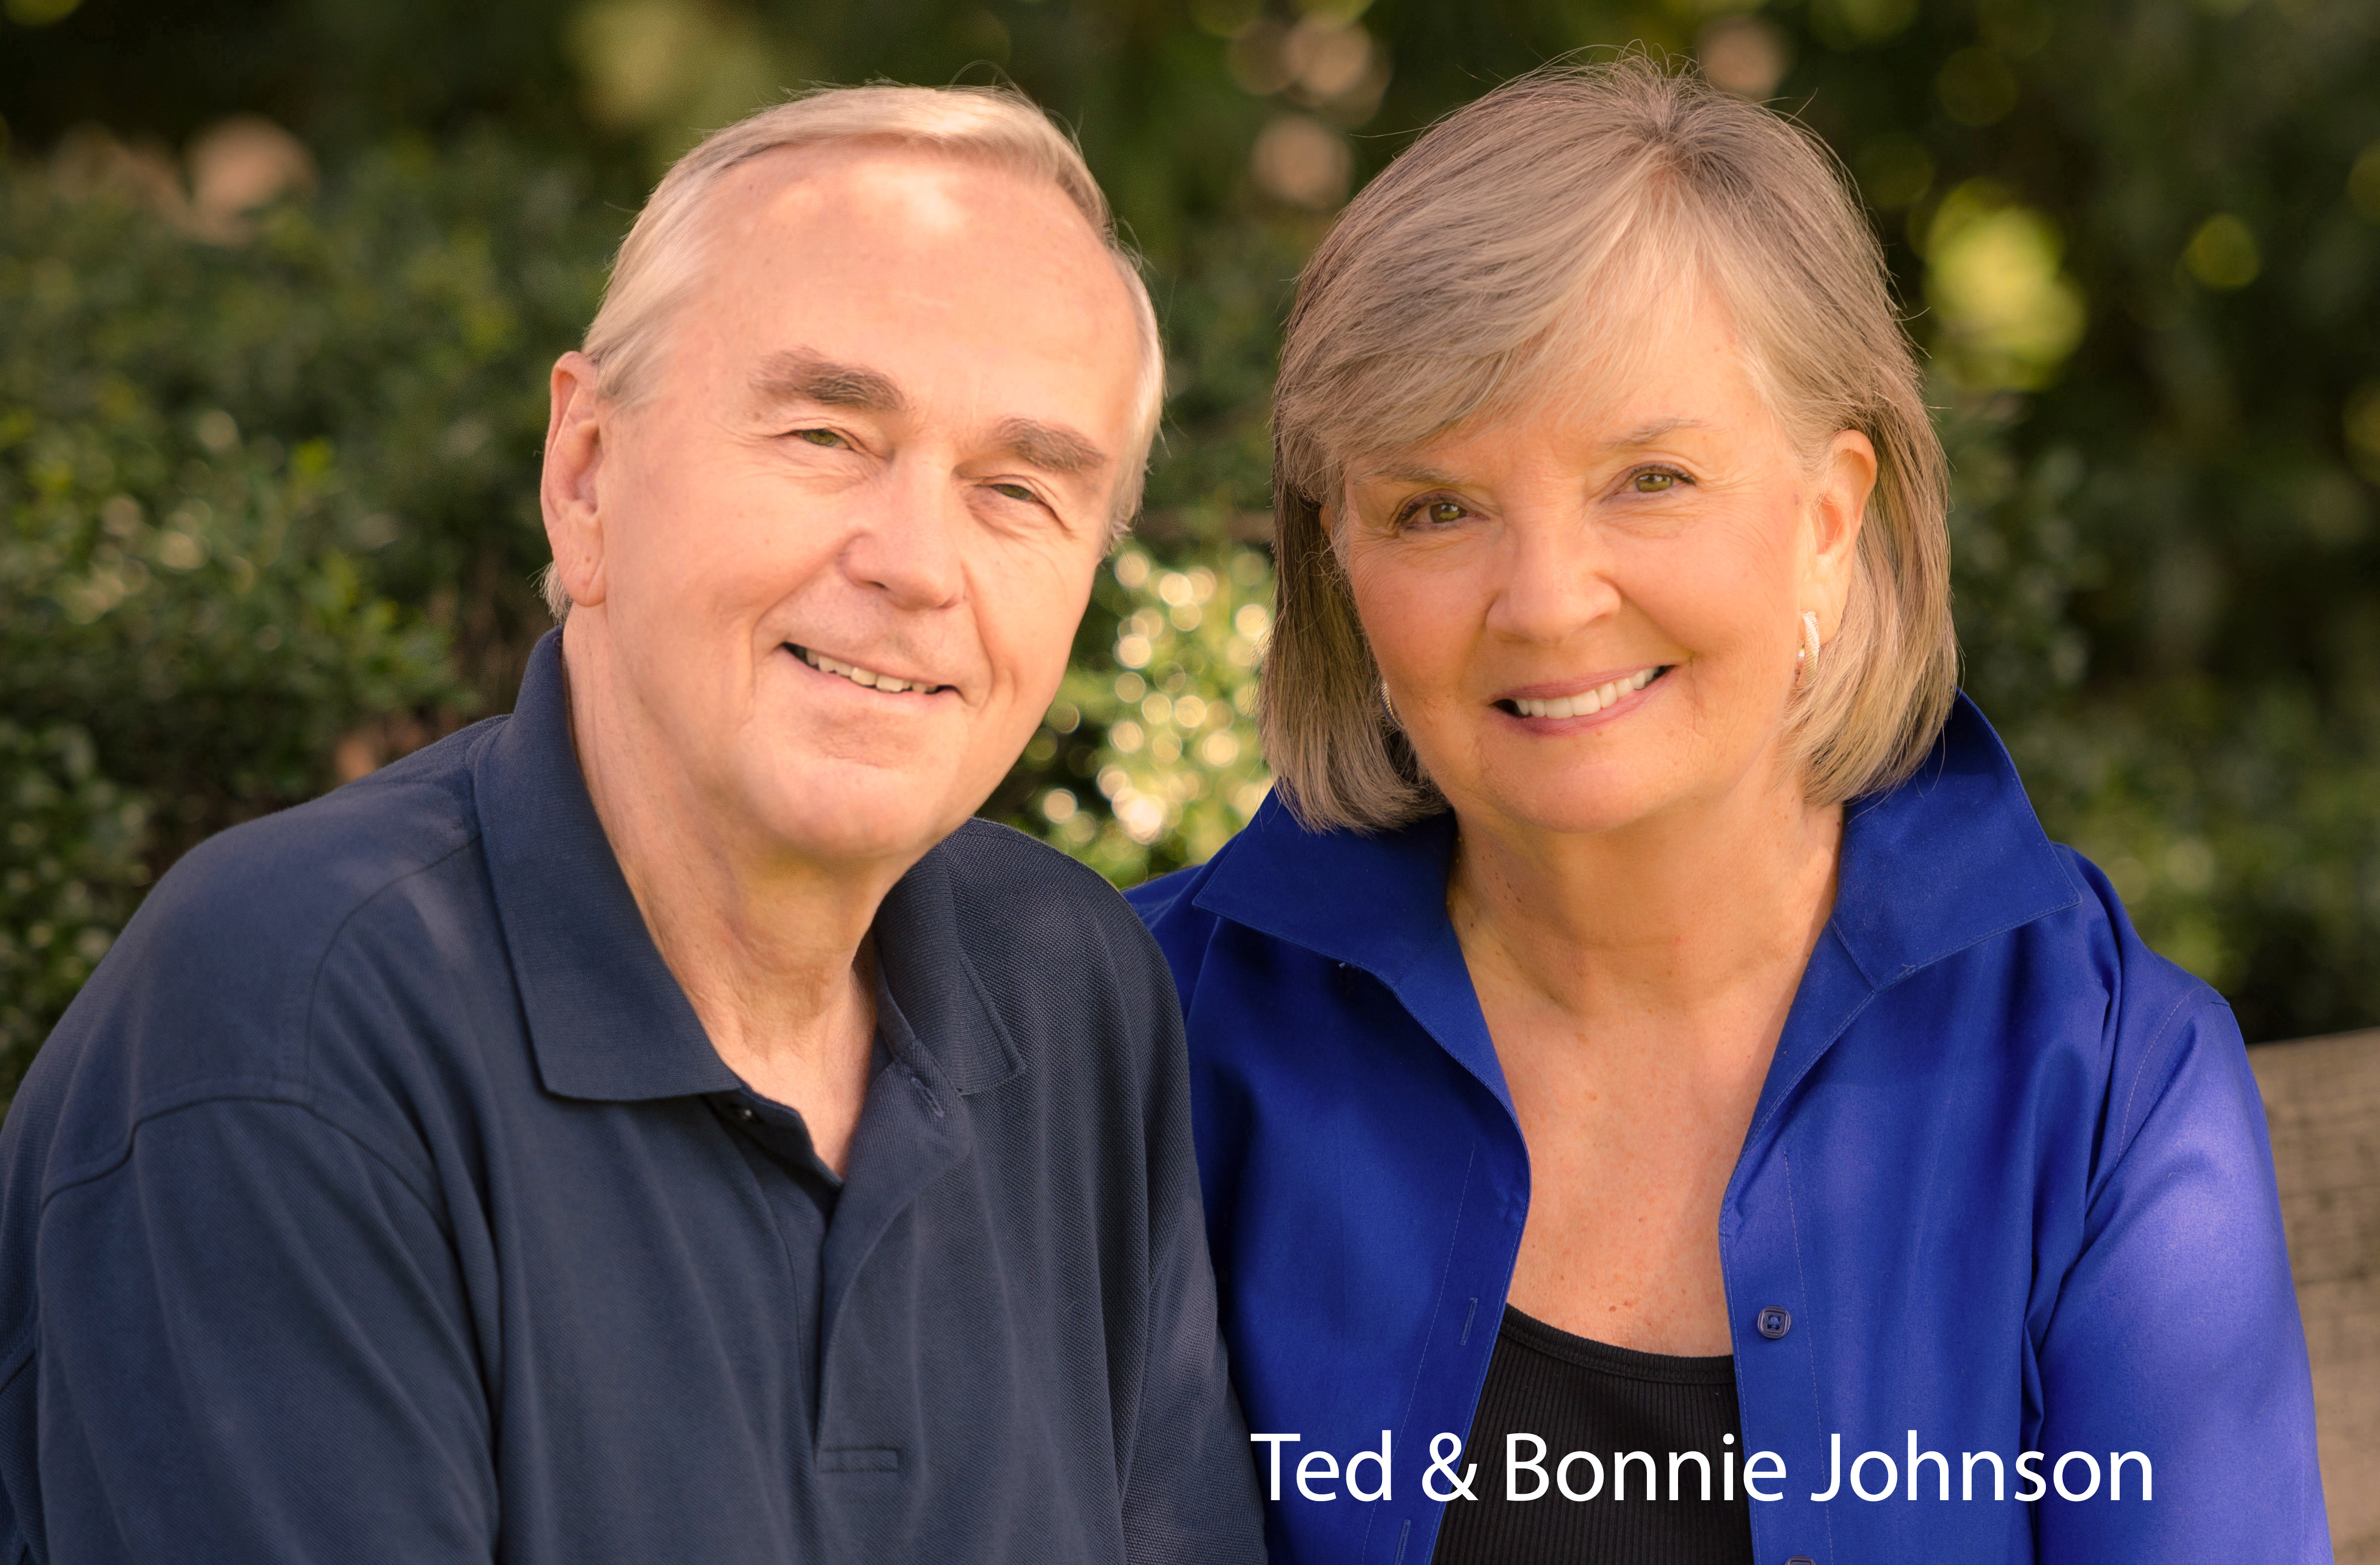 Ted & Bonnie Johnson